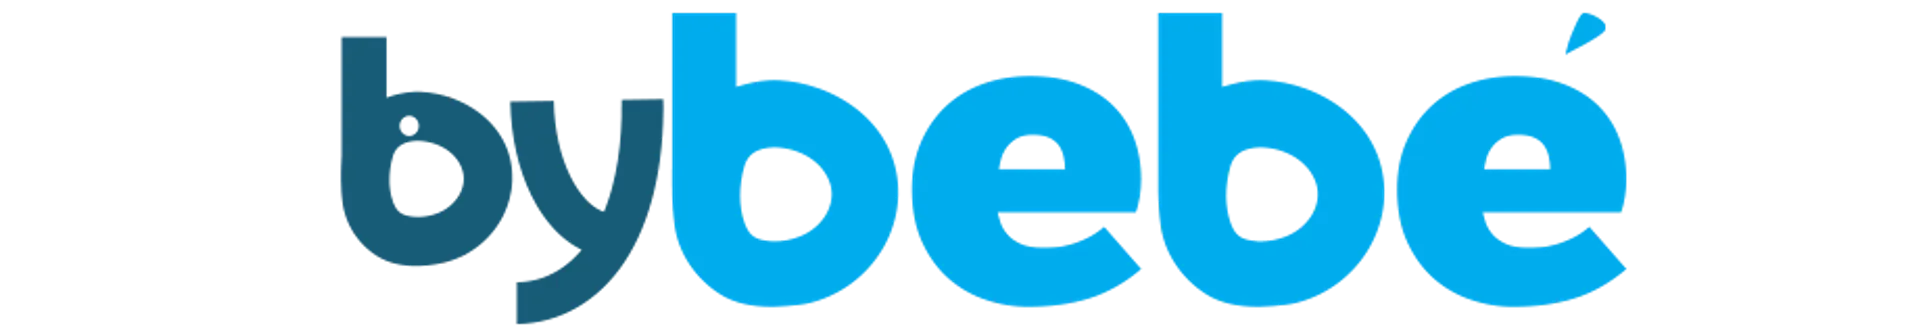 BYBEBÉ logo de folhetos